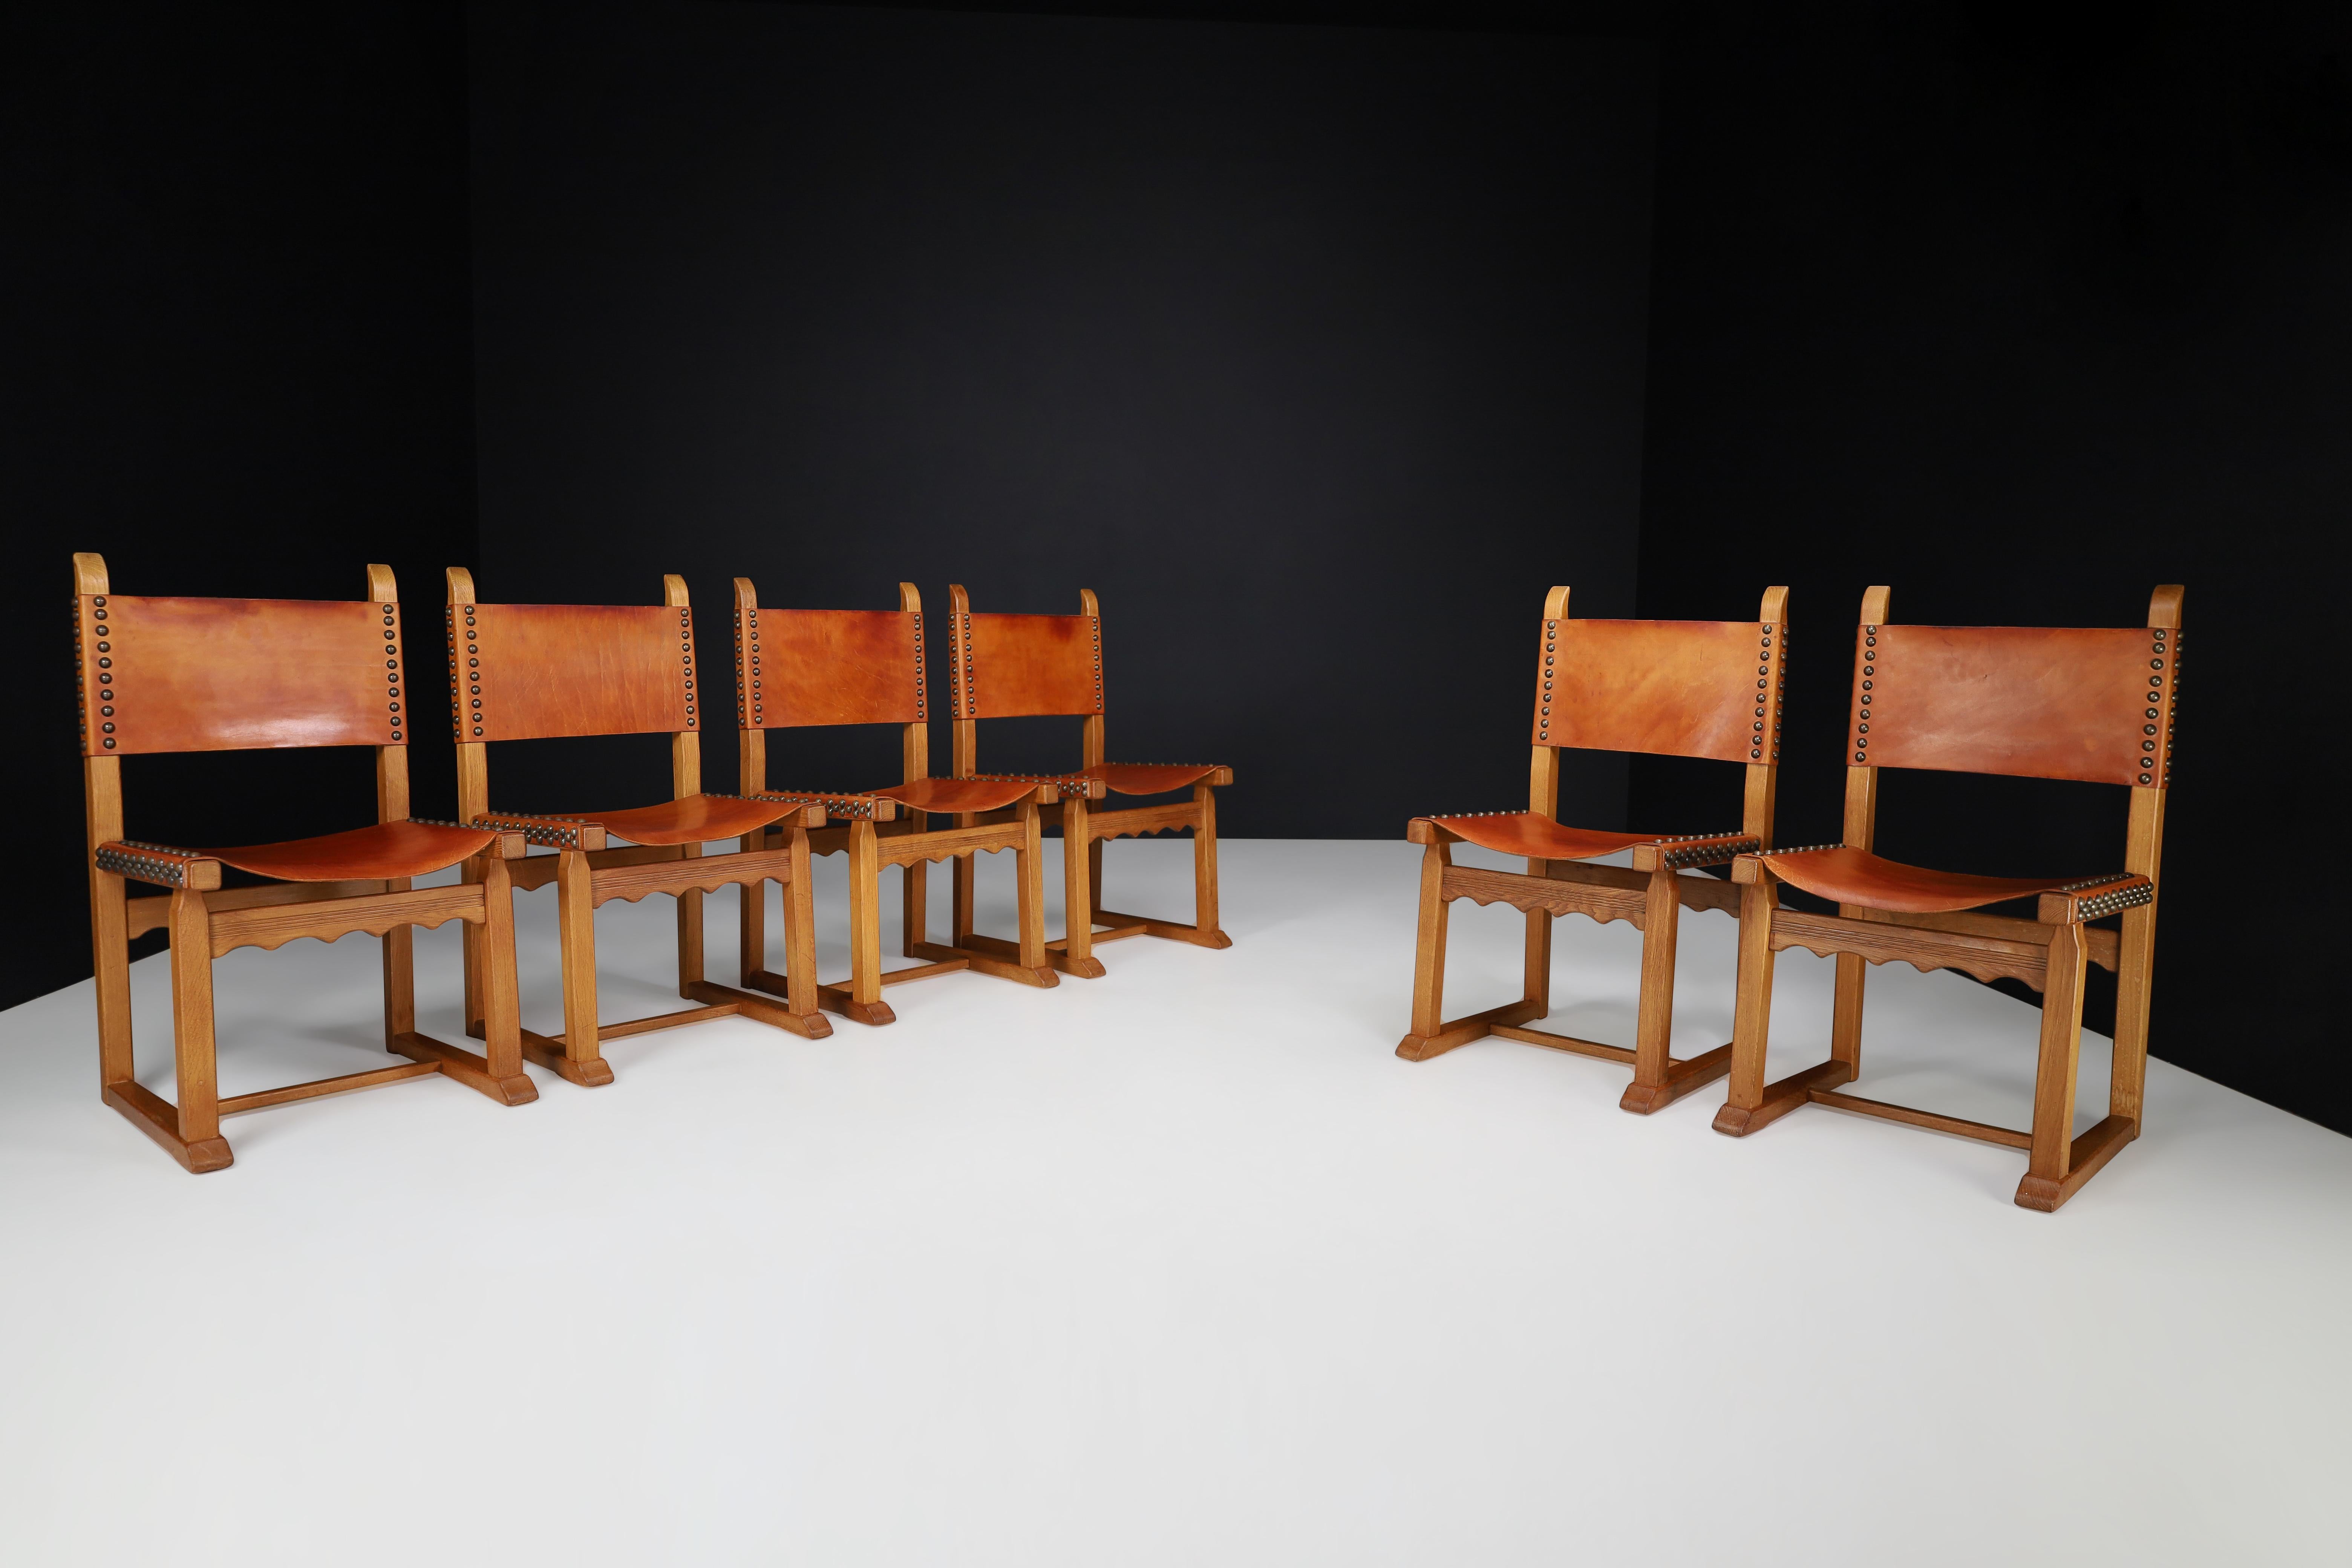 Chaises de salle à manger ou d'appoint en chêne et cuir cognac, France, années 1940. 

Une paire remarquable de six chaises de salle à manger ou d'appoint françaises en chêne et cuir cognac fin datant des années 1960. Elle repose sur des pieds